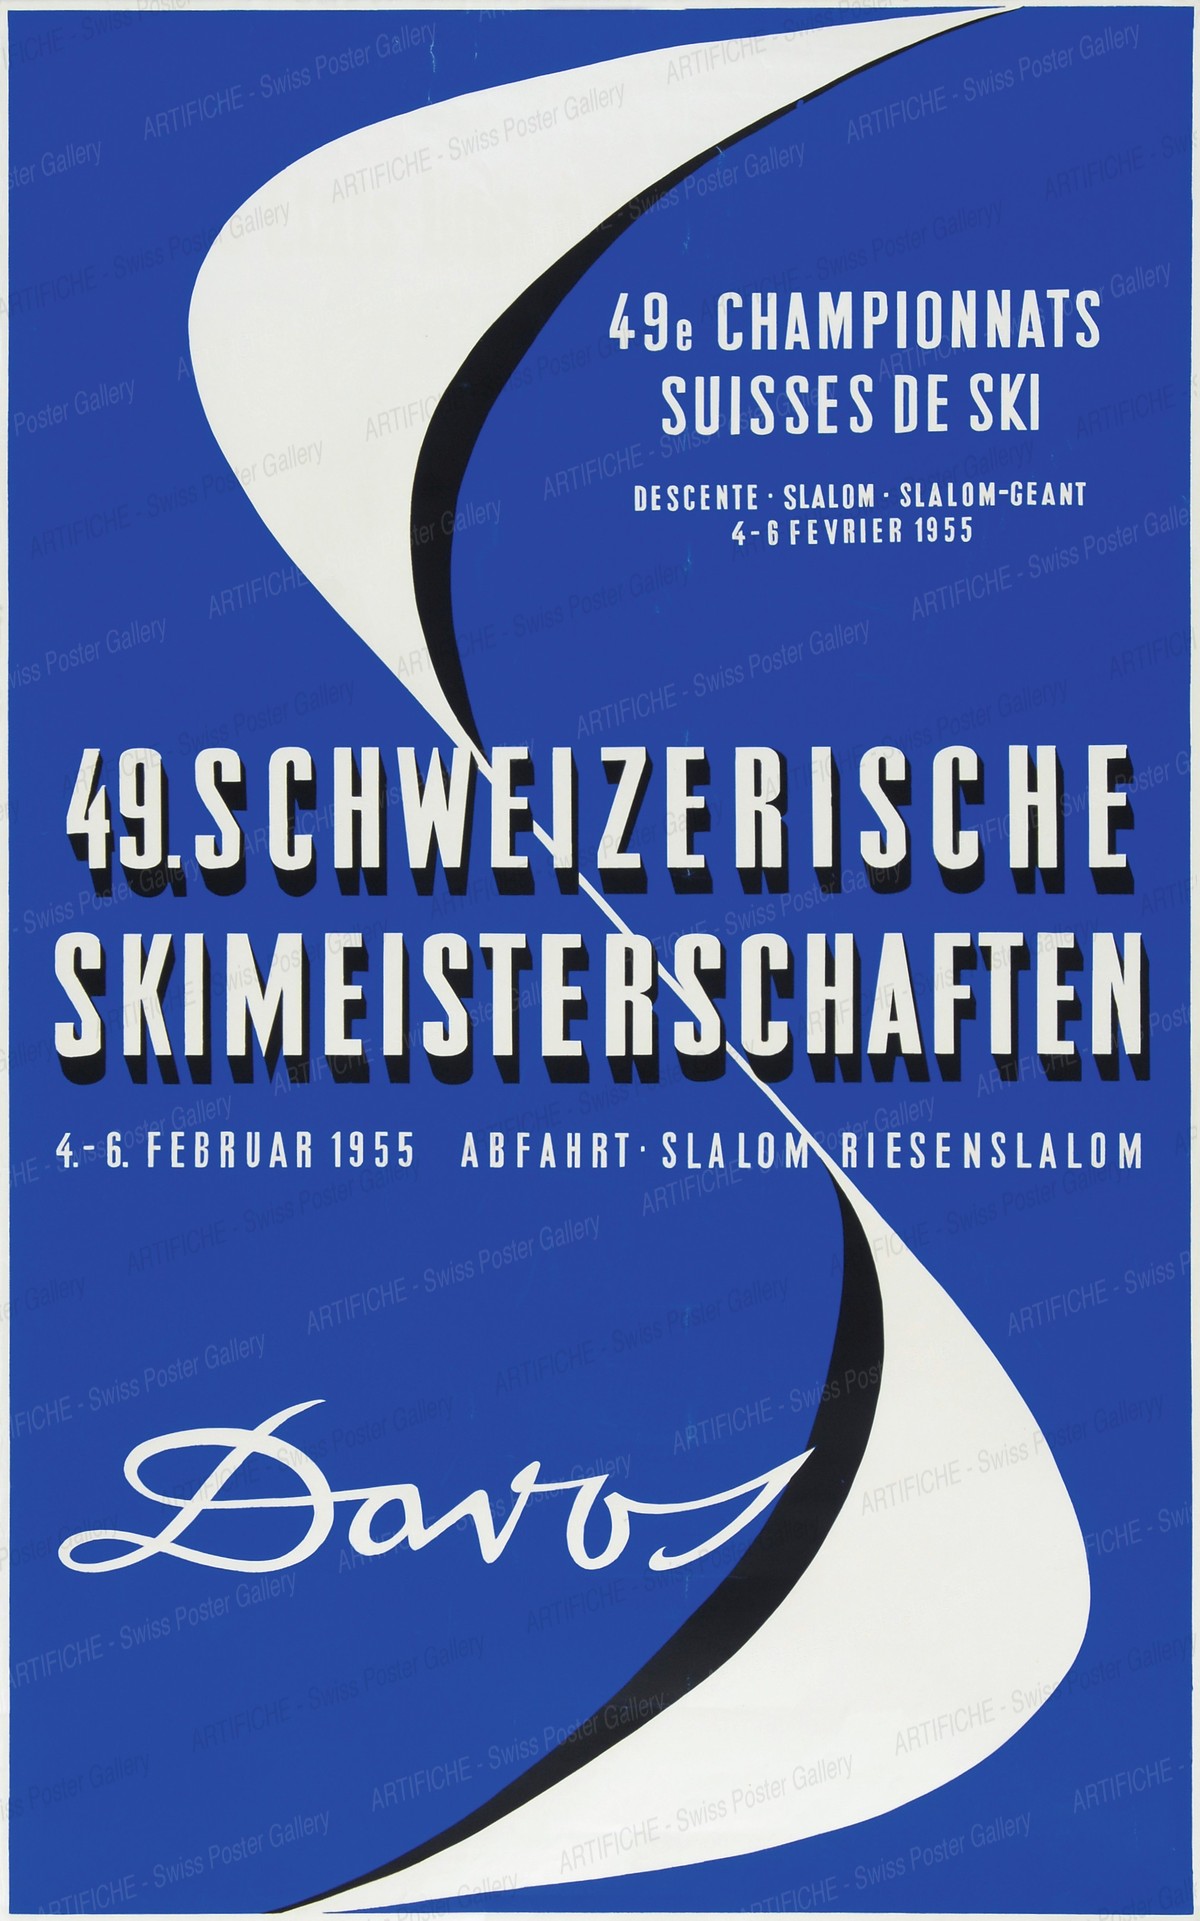 DAVOS 49. Schweizerische Skimeisterschaften, Willy Trapp